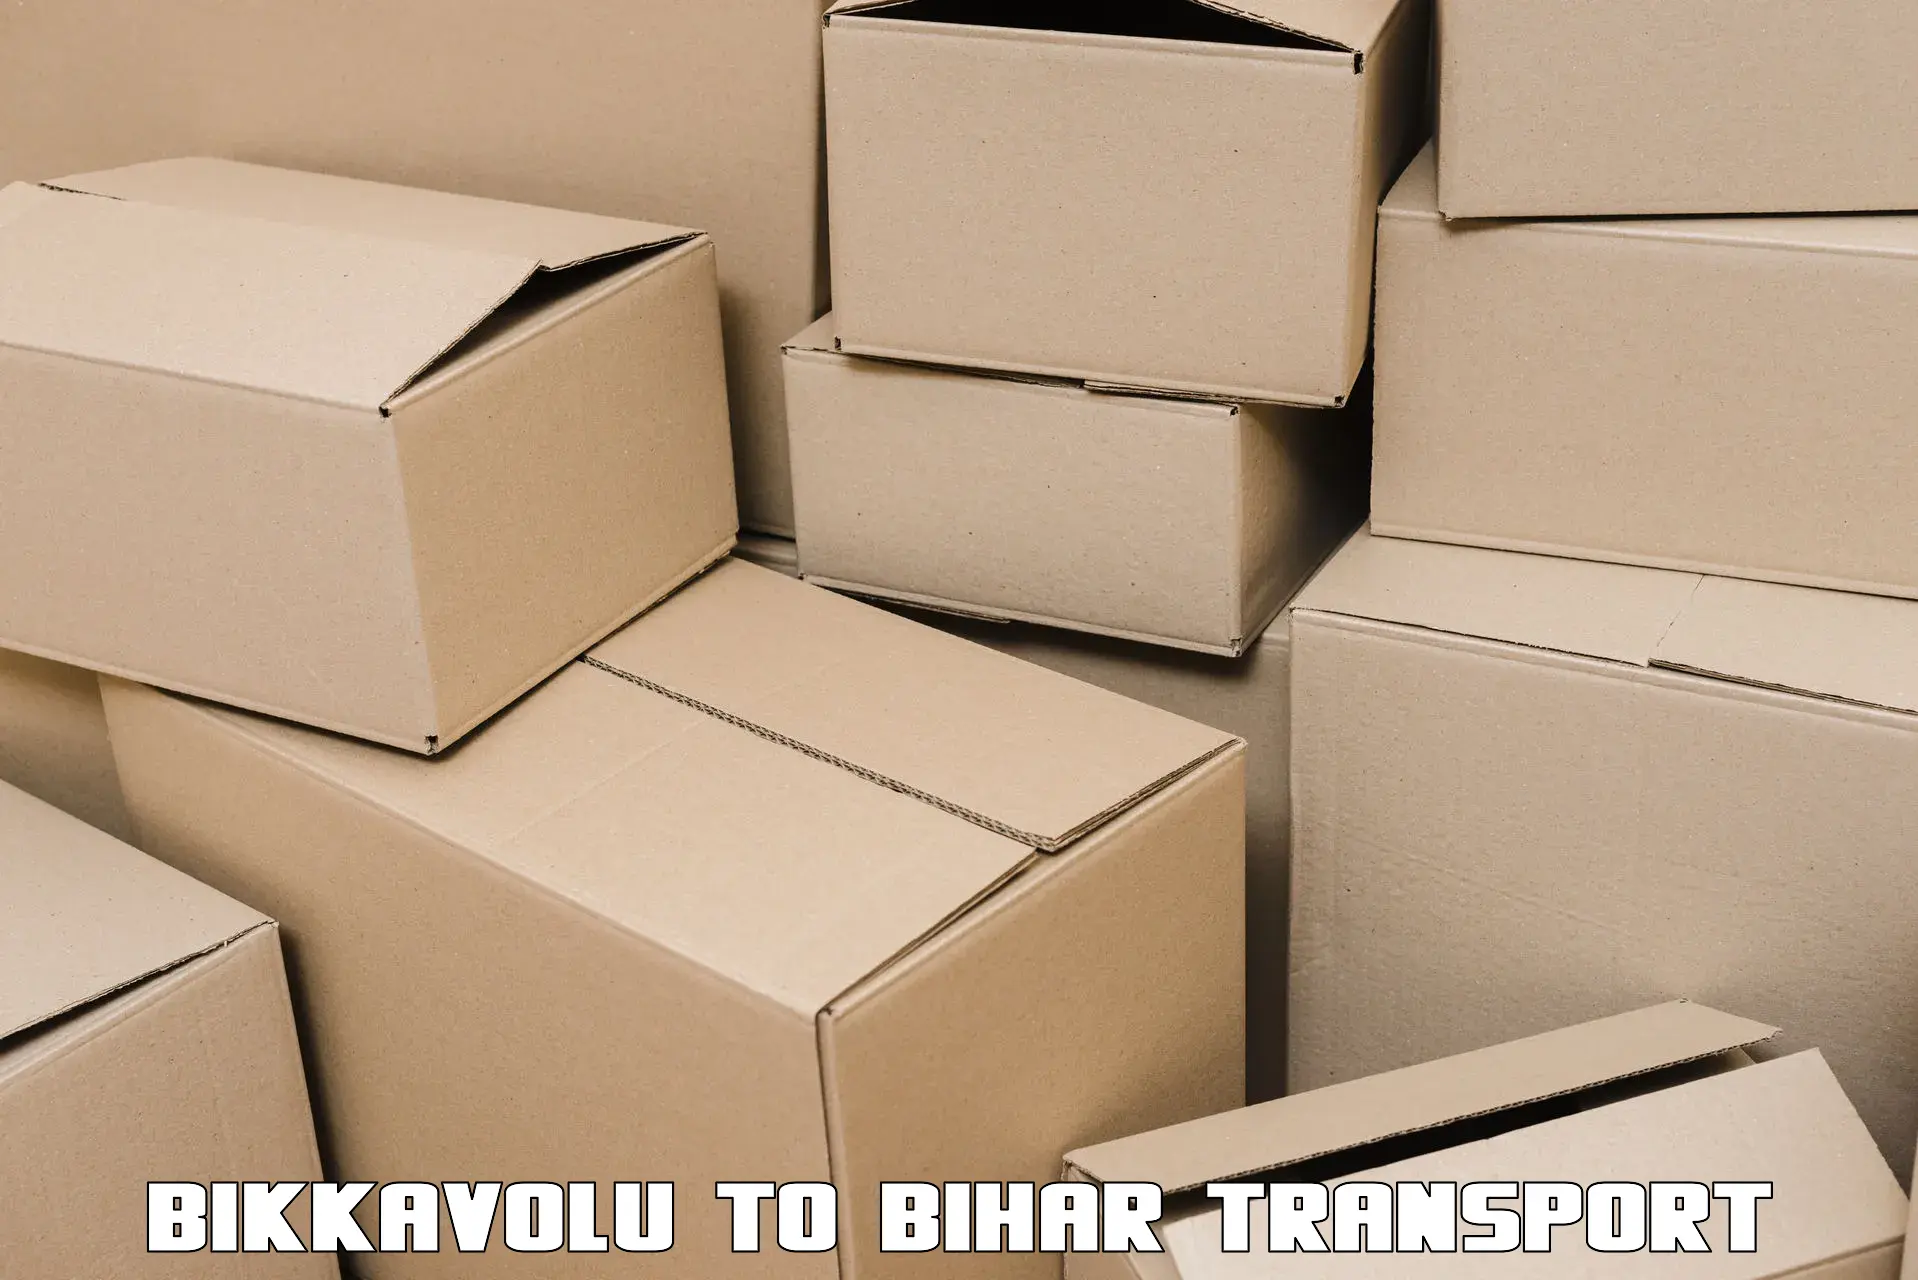 Truck transport companies in India Bikkavolu to Chakai